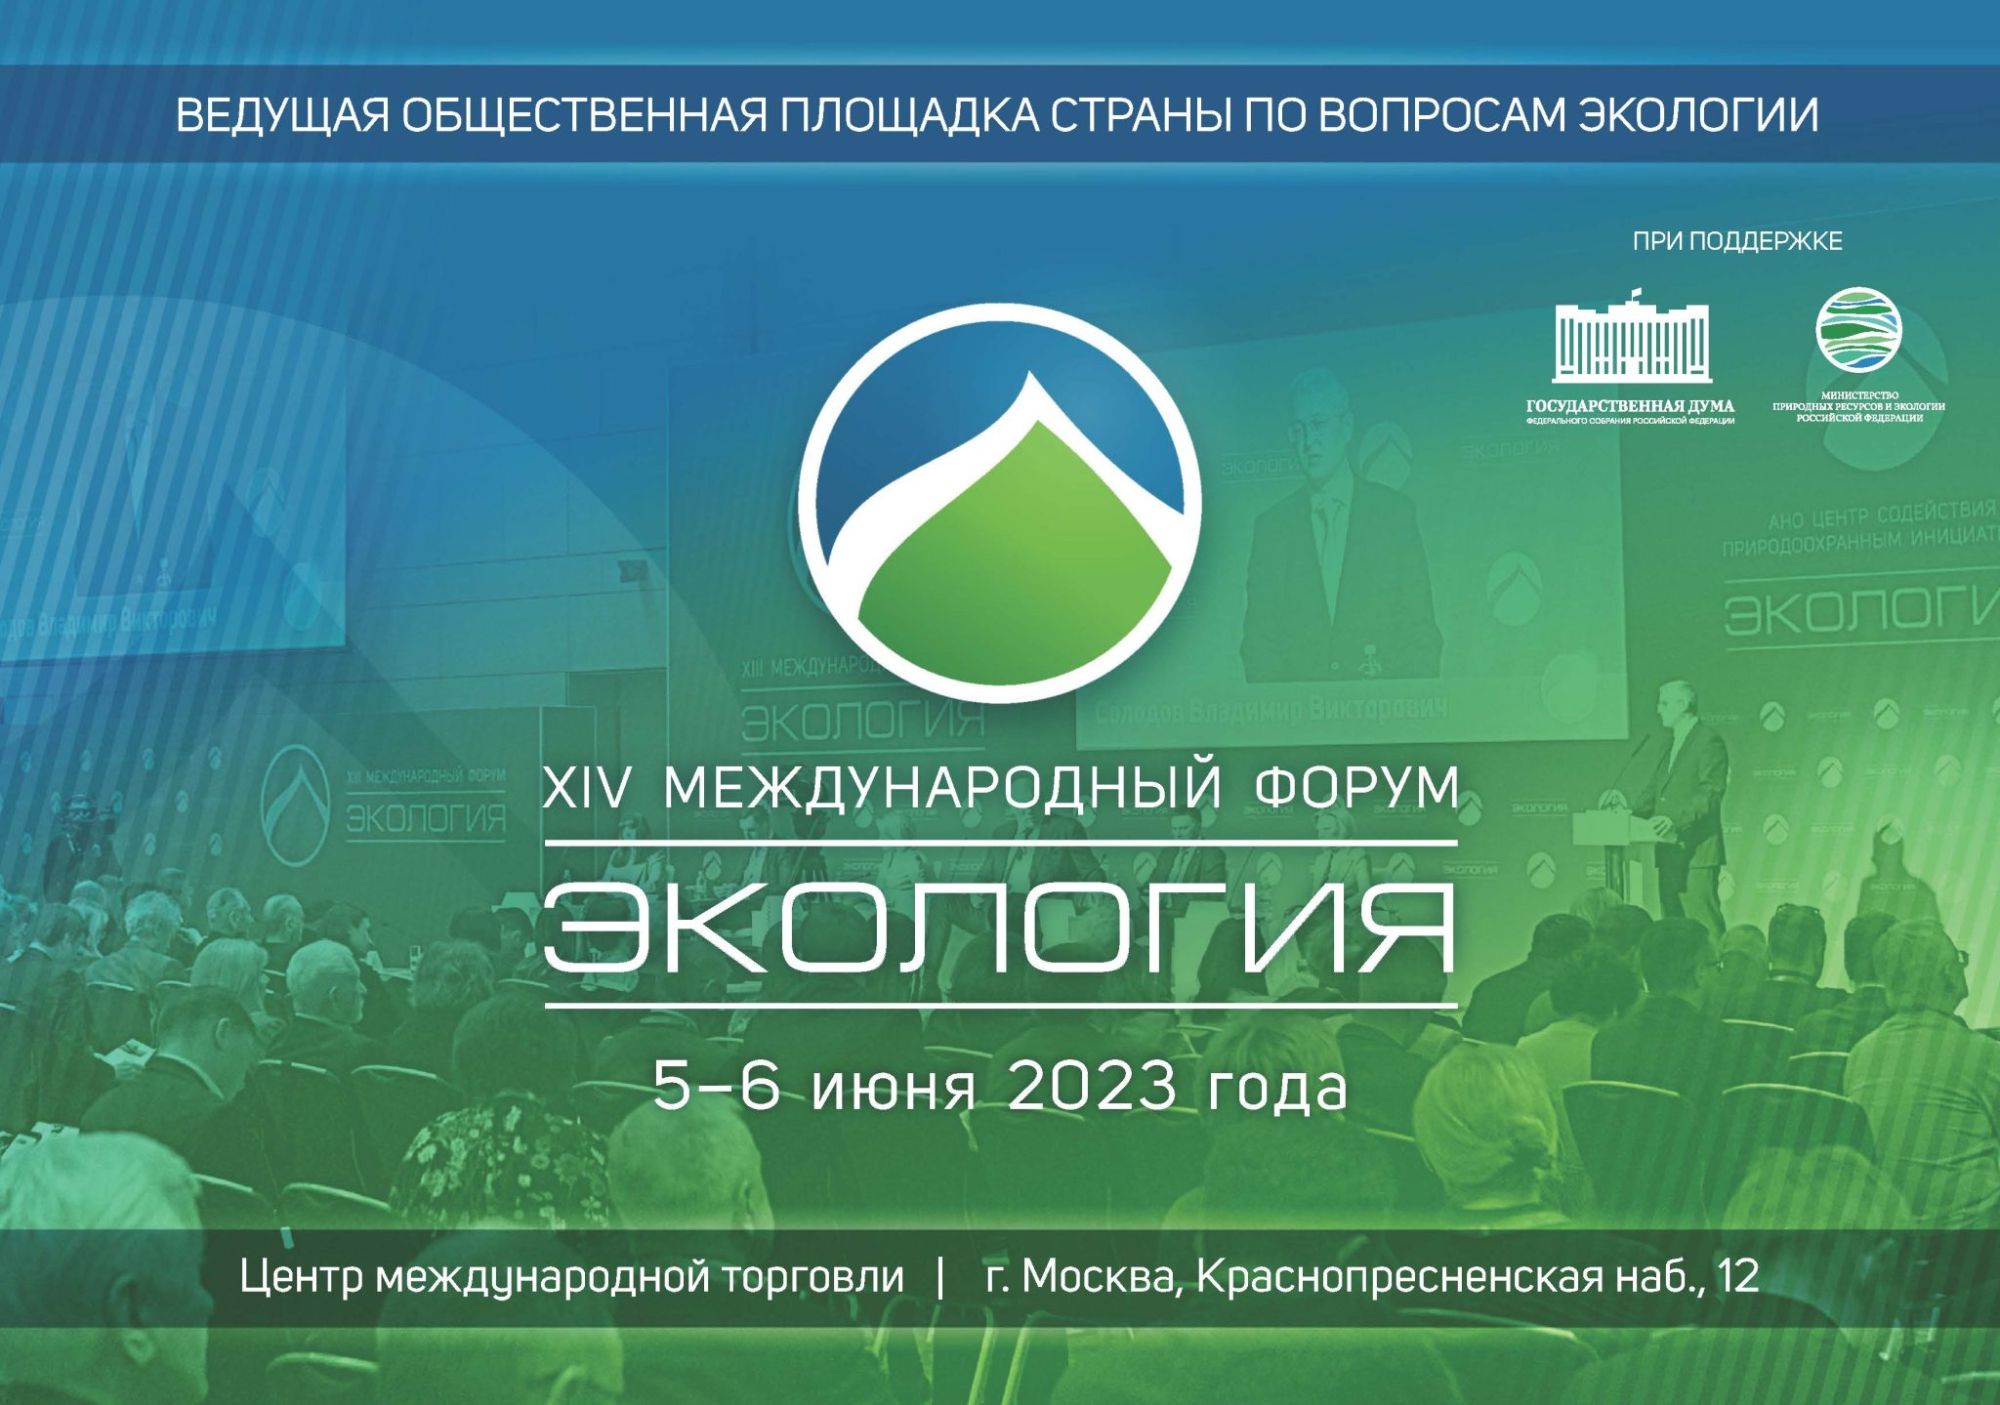 Компания САЛМОРУ приняла участие в XIV Международном форуме «Экология», который проходил 5-6 июня 2023 года в Москве в Центре международной торговли